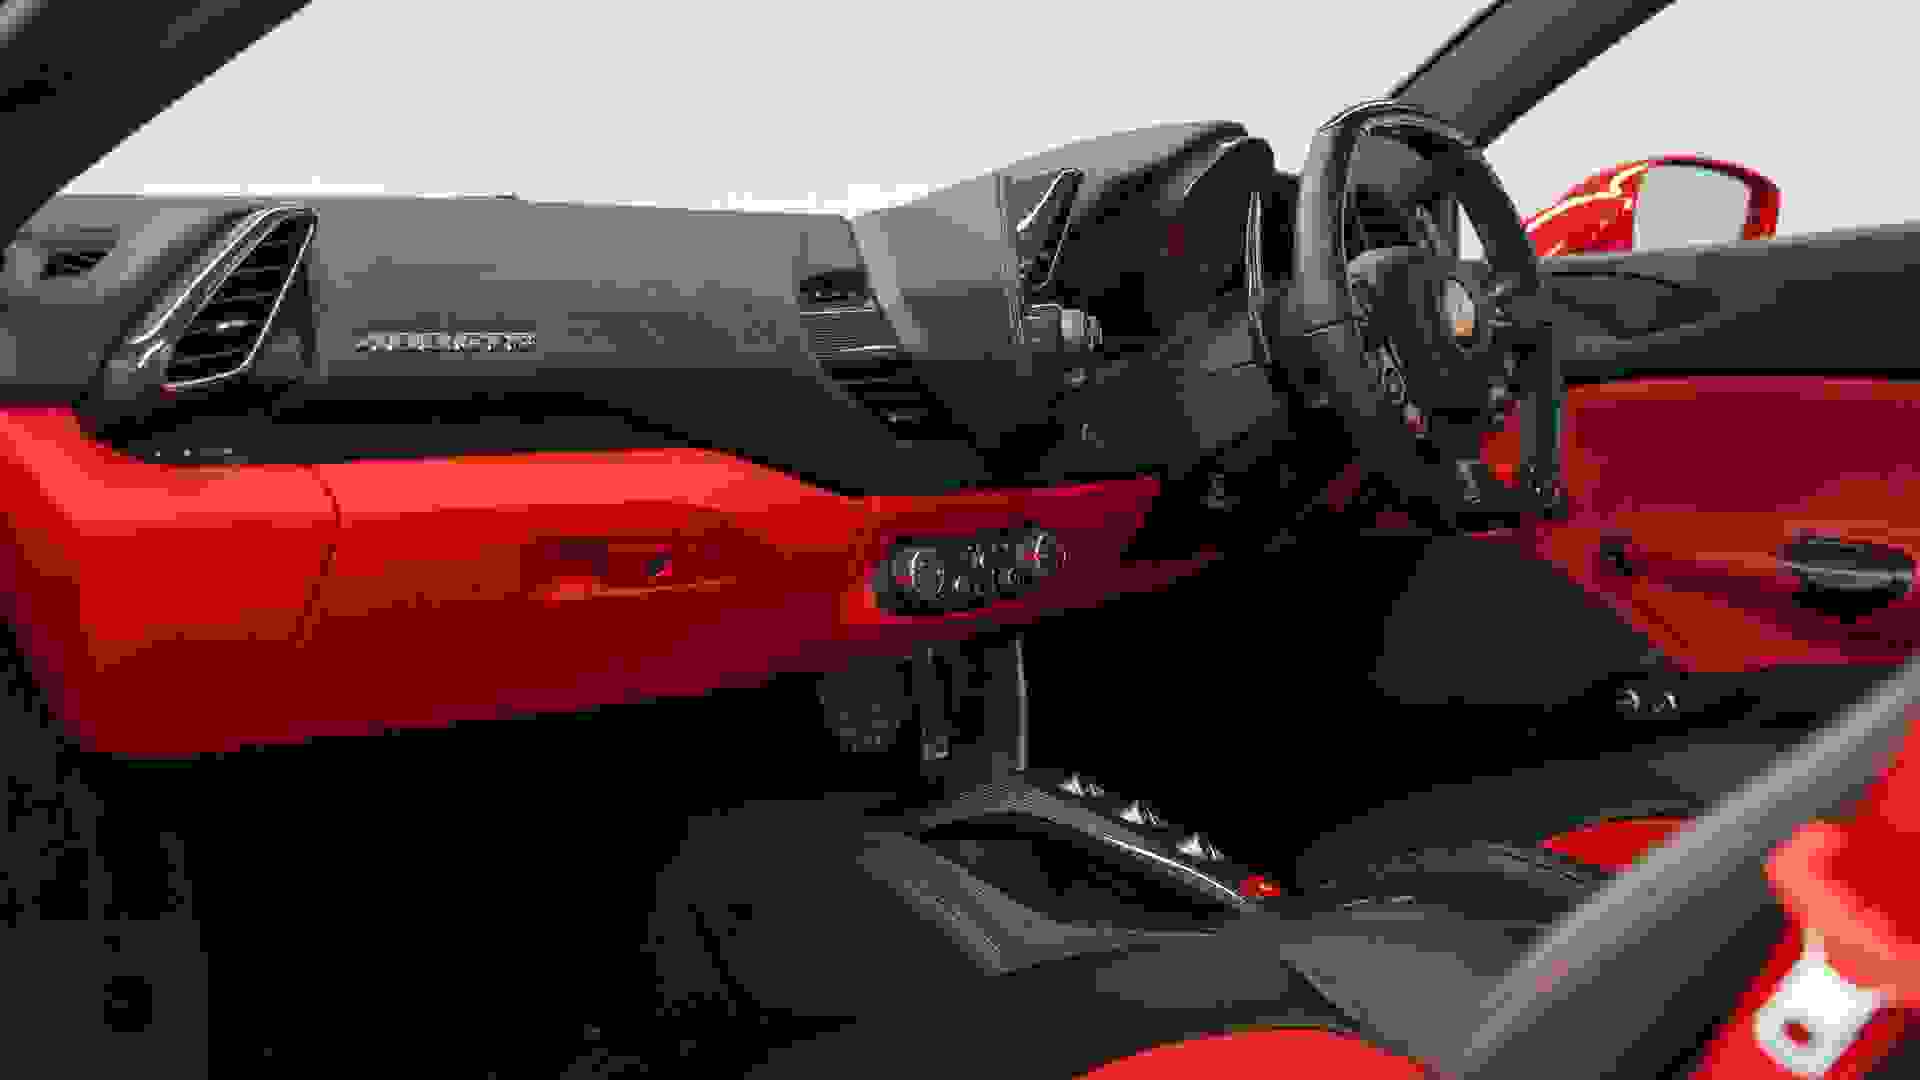 Ferrari 488 Photo 3ac30012-0389-48d5-9b11-9c56a6fcd869.jpg